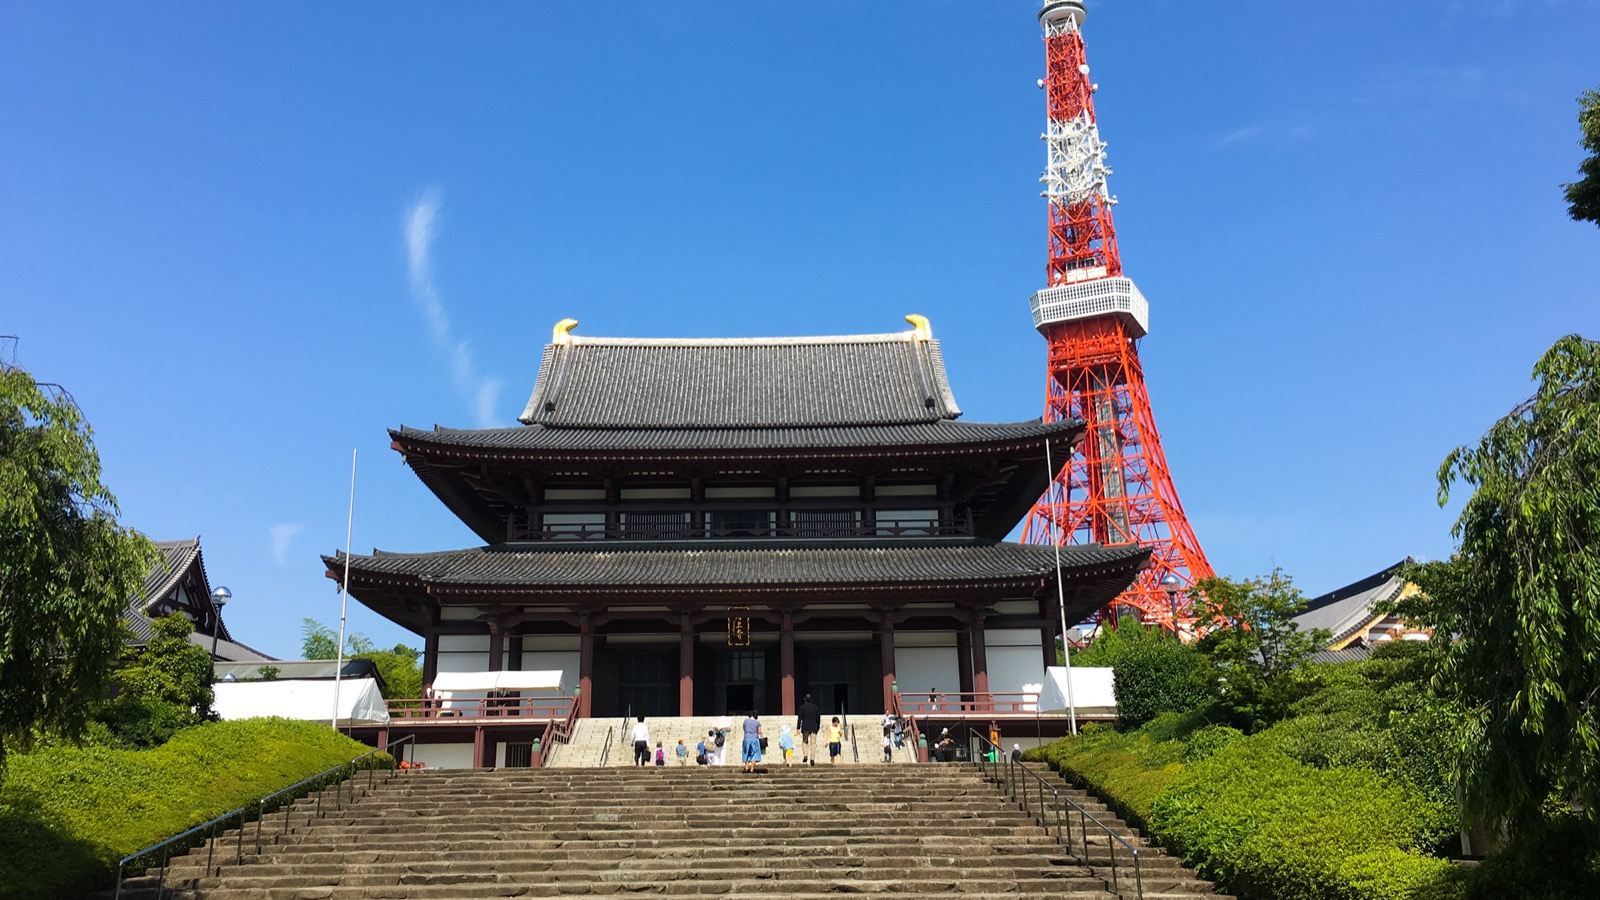 Photo of Zojoji Temple, Japan (Zojo-ji and the Tokyo Tower by Daniel Ramirez)